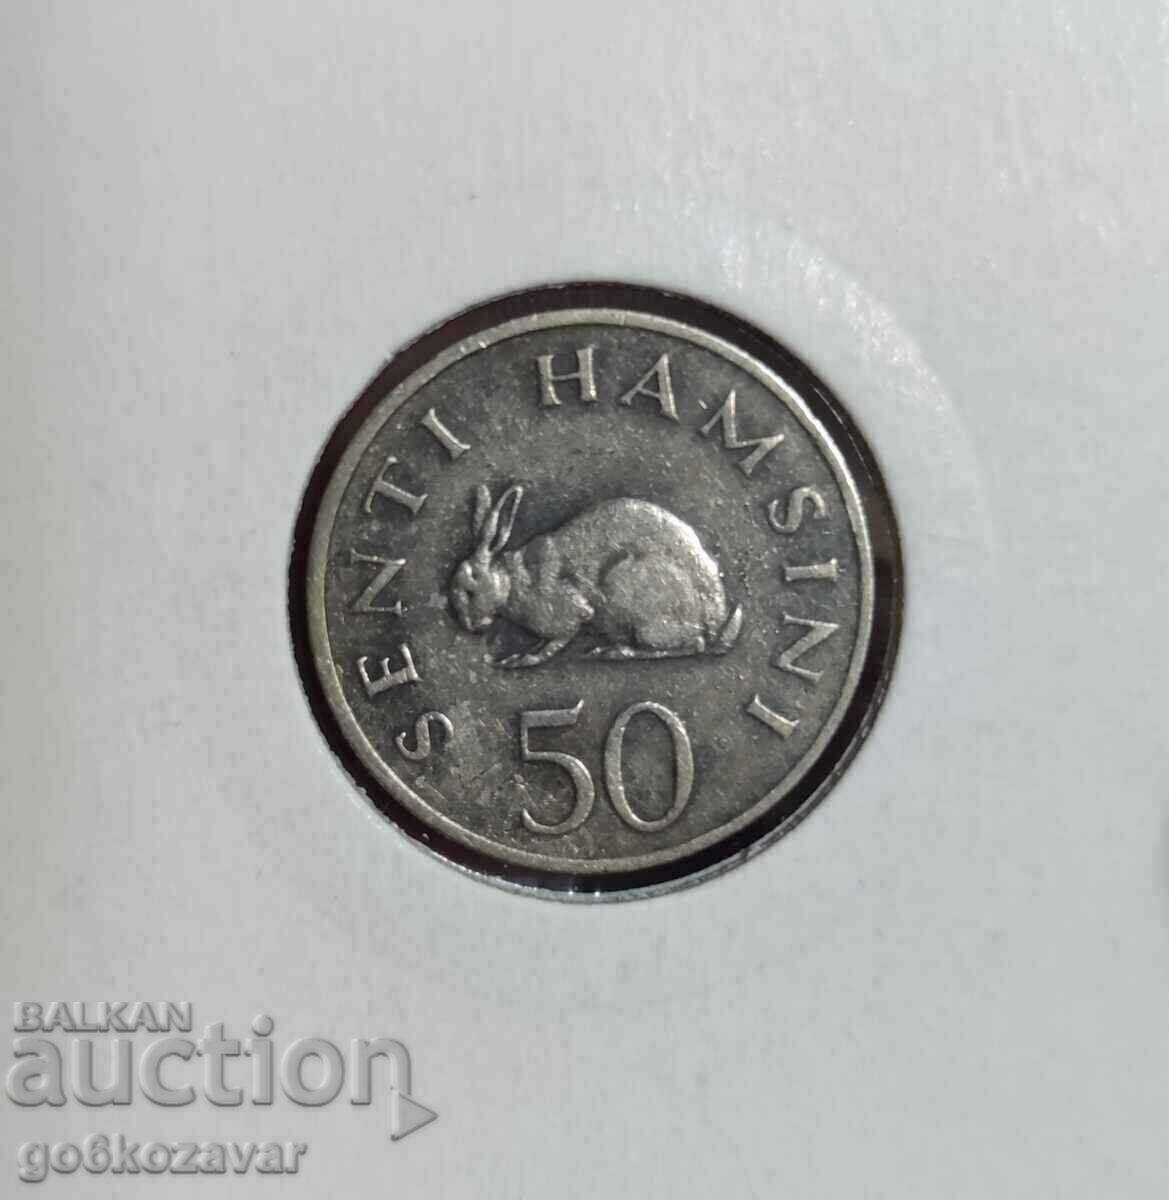 Tanzania 50 cents 1980